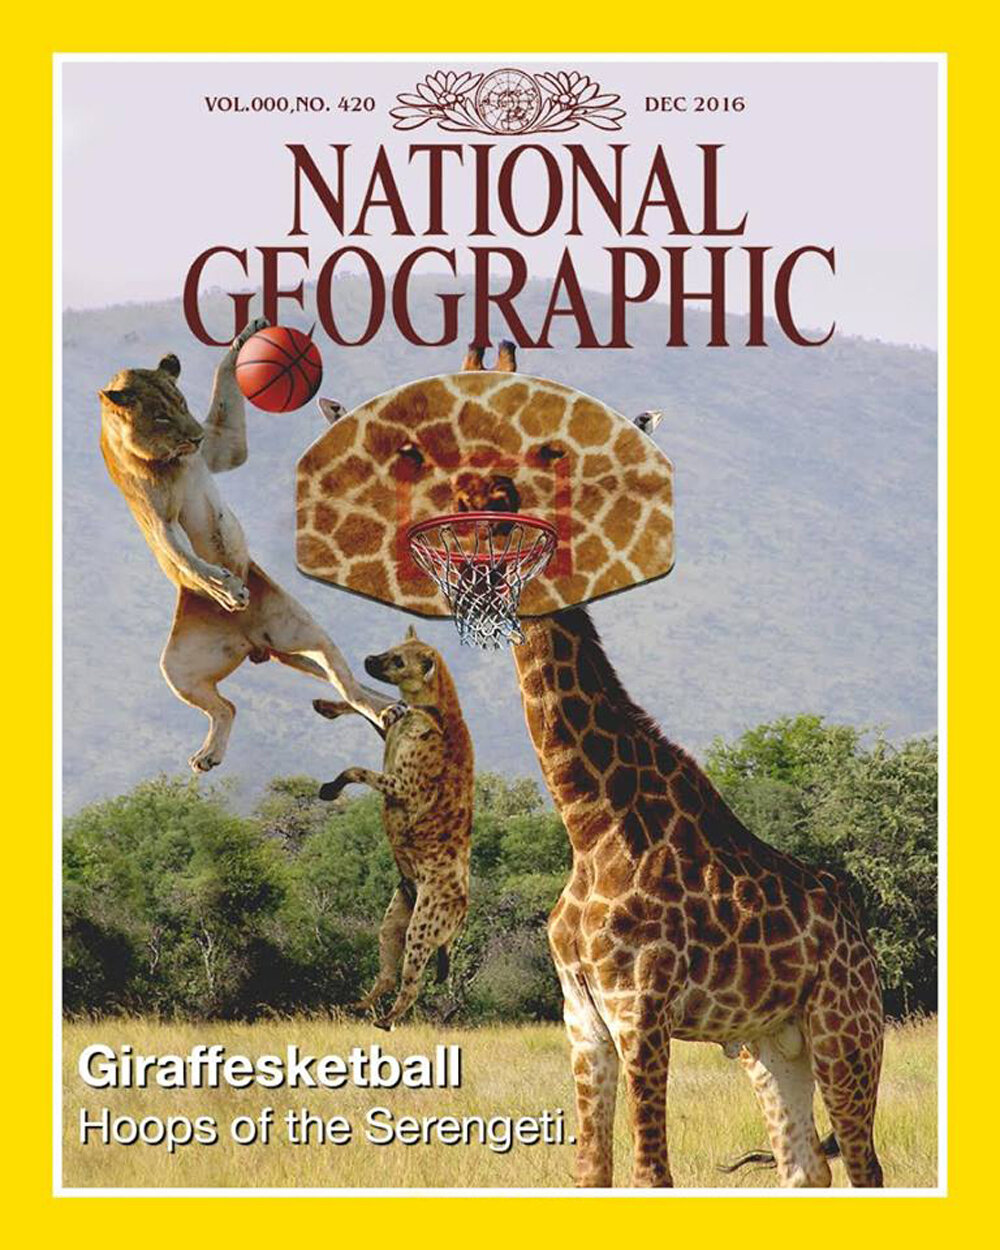 Giraffesketball.jpg